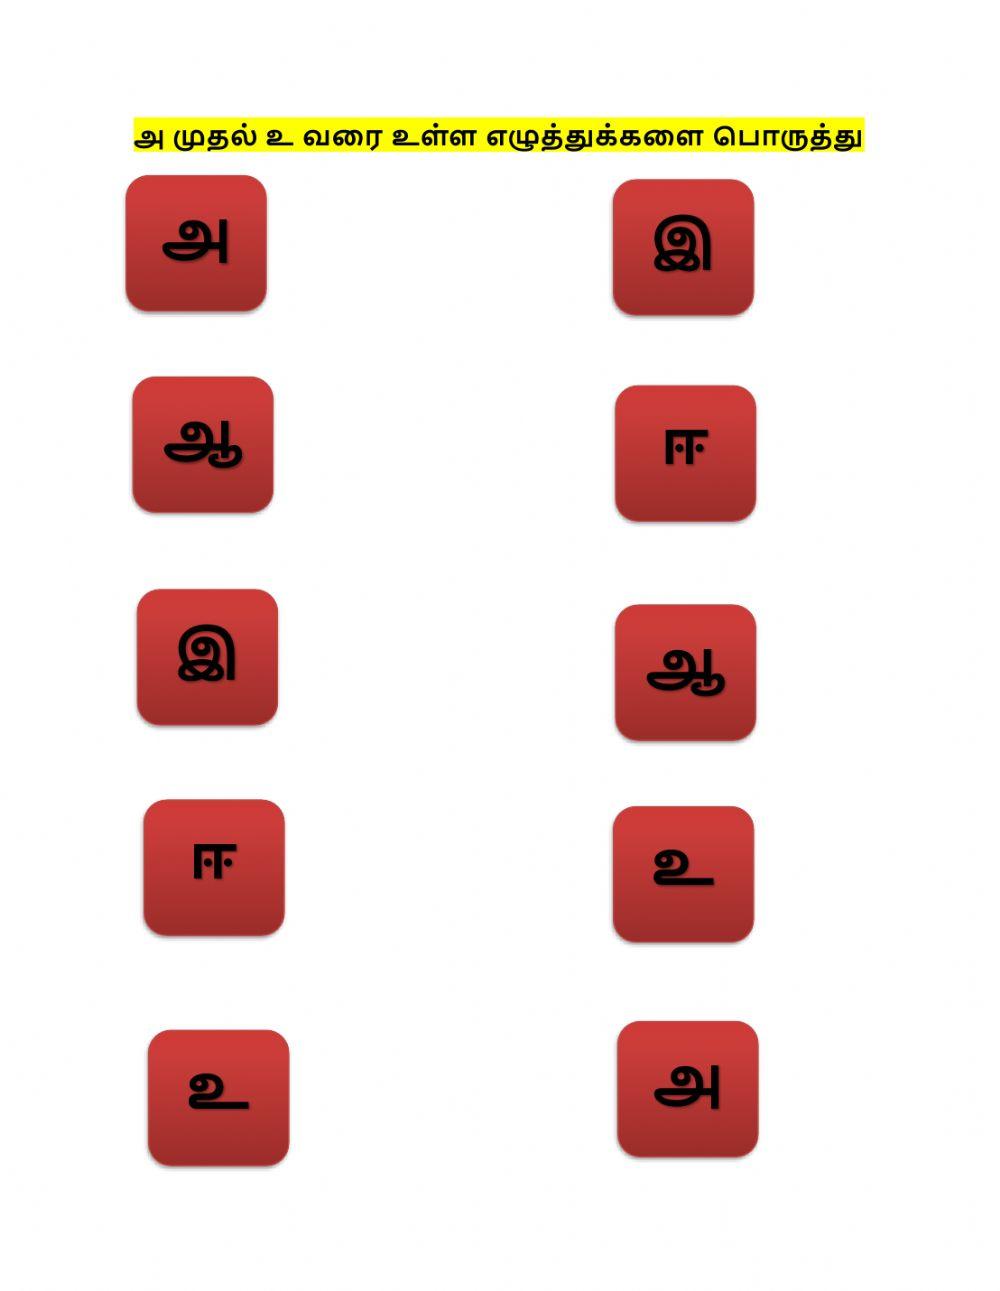 Tamil -அ முதல் உ வரை உள்ள எழுத்துக்களை பொருத்தி மகிழ்